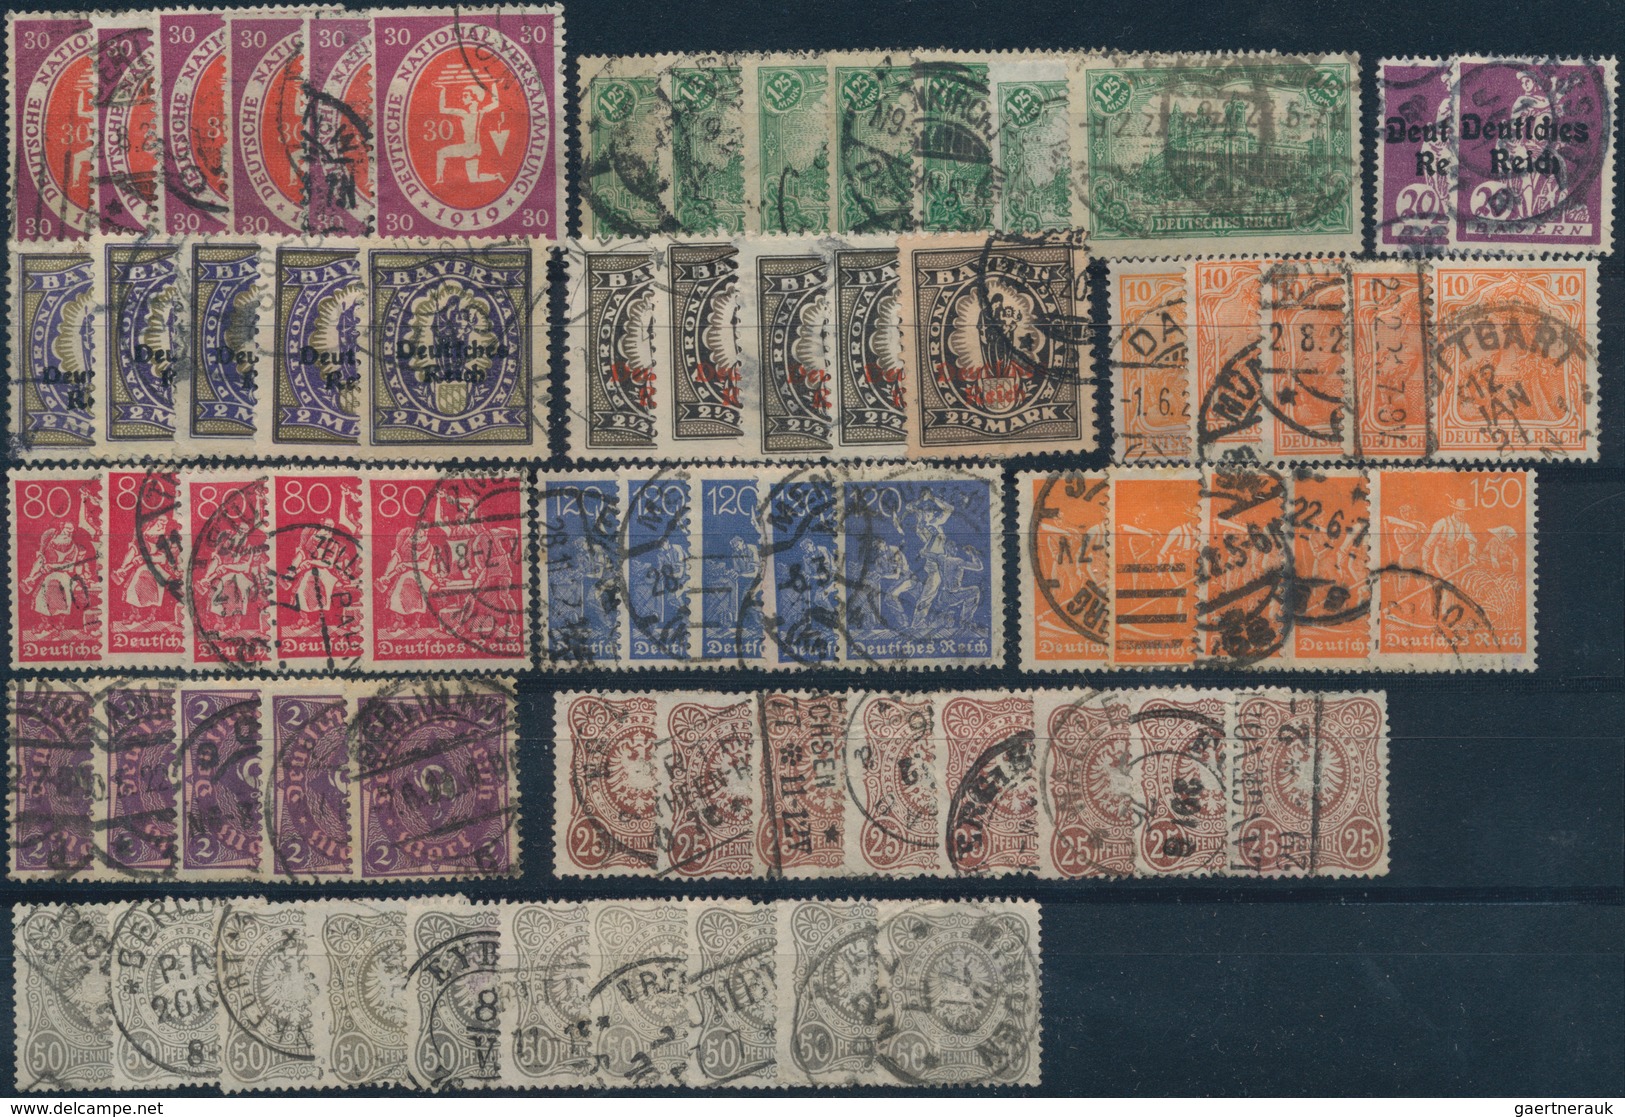 Deutsches Reich: 1875-1930, Gemischte Partie Auf 30 Steckkarten, Beginnend Mit Pfennige, Viel Infla - Sammlungen